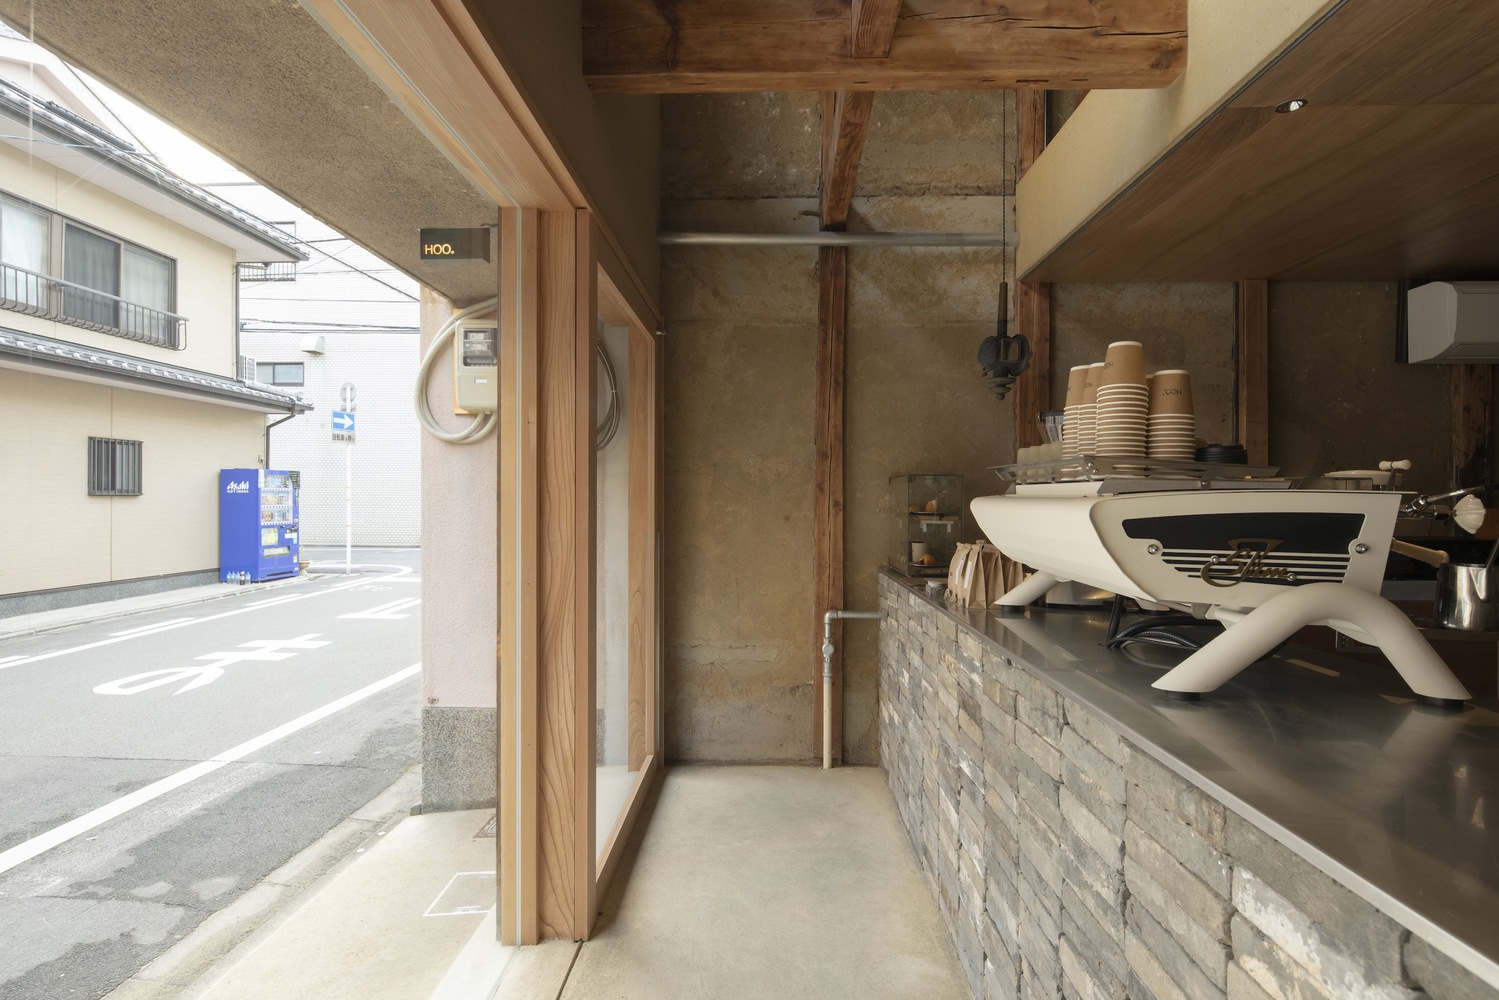 日本,京都,咖啡厅设计案例,Hoo. Café,甜甜圈店,62㎡,咖啡厅设计,Koyori,咖啡店设计,町屋改造